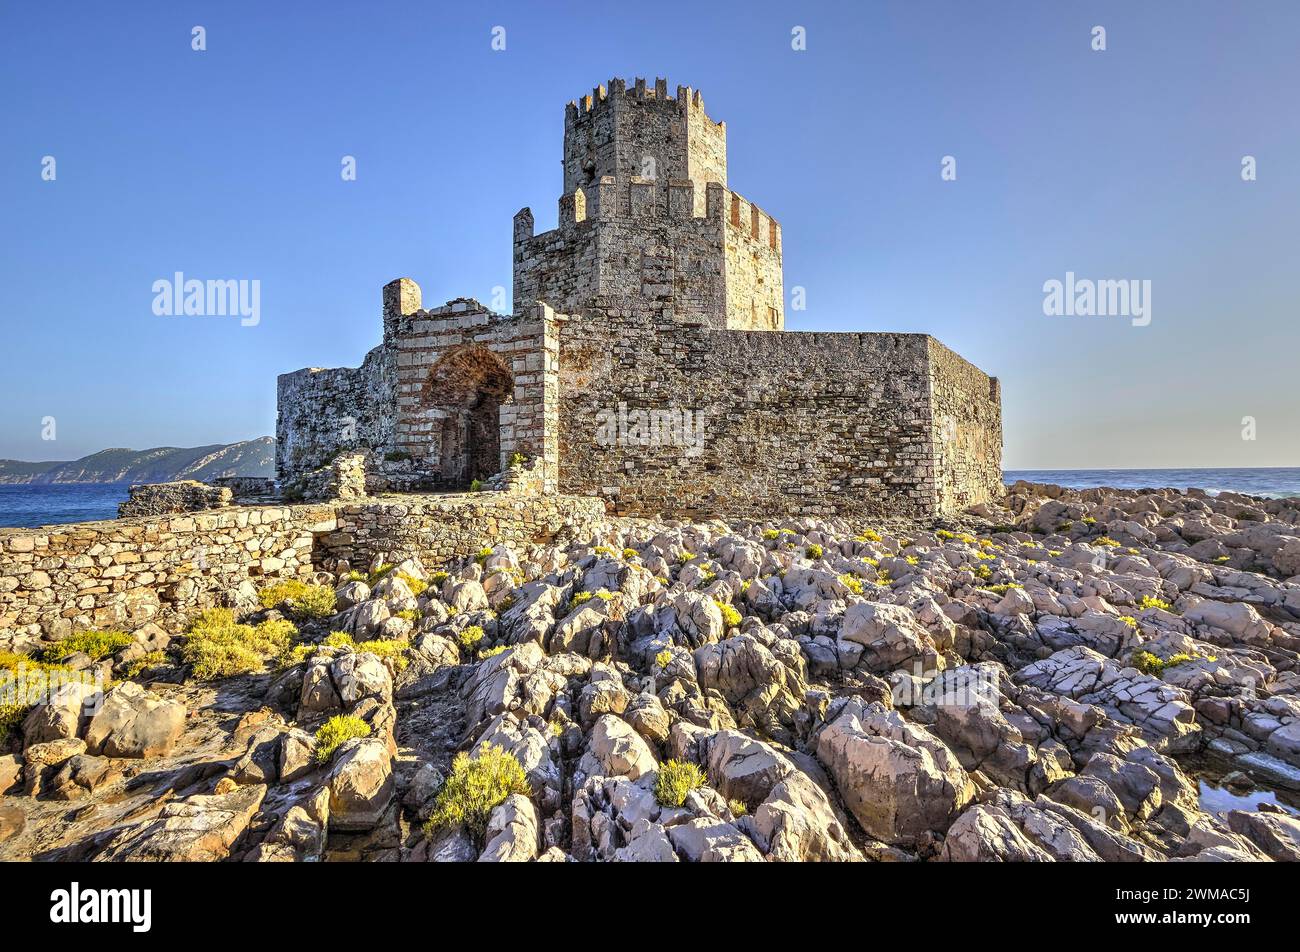 Sonnendurchflutete Burgruinen auf einer felsigen Klippe über dem Meer, achteckiger mittelalterlicher Turm. Die Insel Bourtzi, die Festung Methoni, Peloponnes, Griechenland Stockfoto